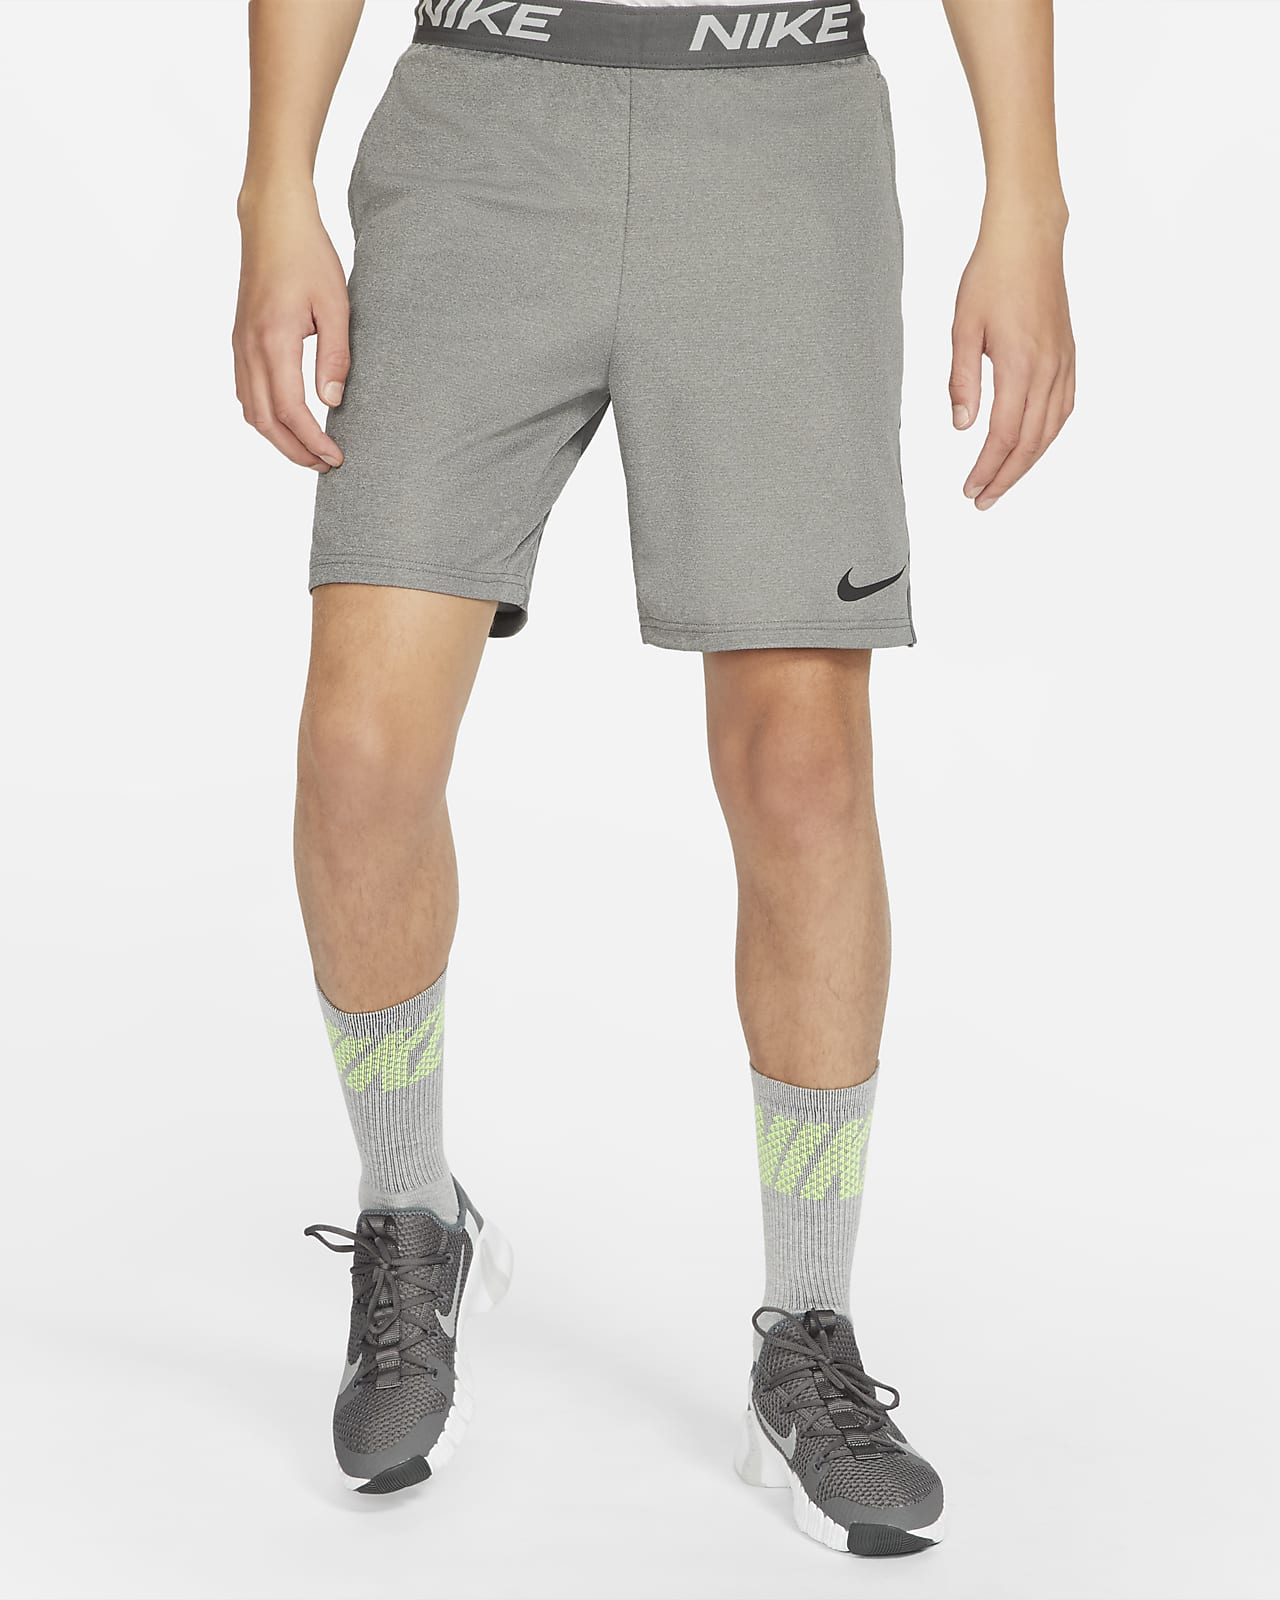 Culpable Persona con experiencia Universal Shorts de entrenamiento para hombre Nike Dri-FIT Veneer. Nike.com